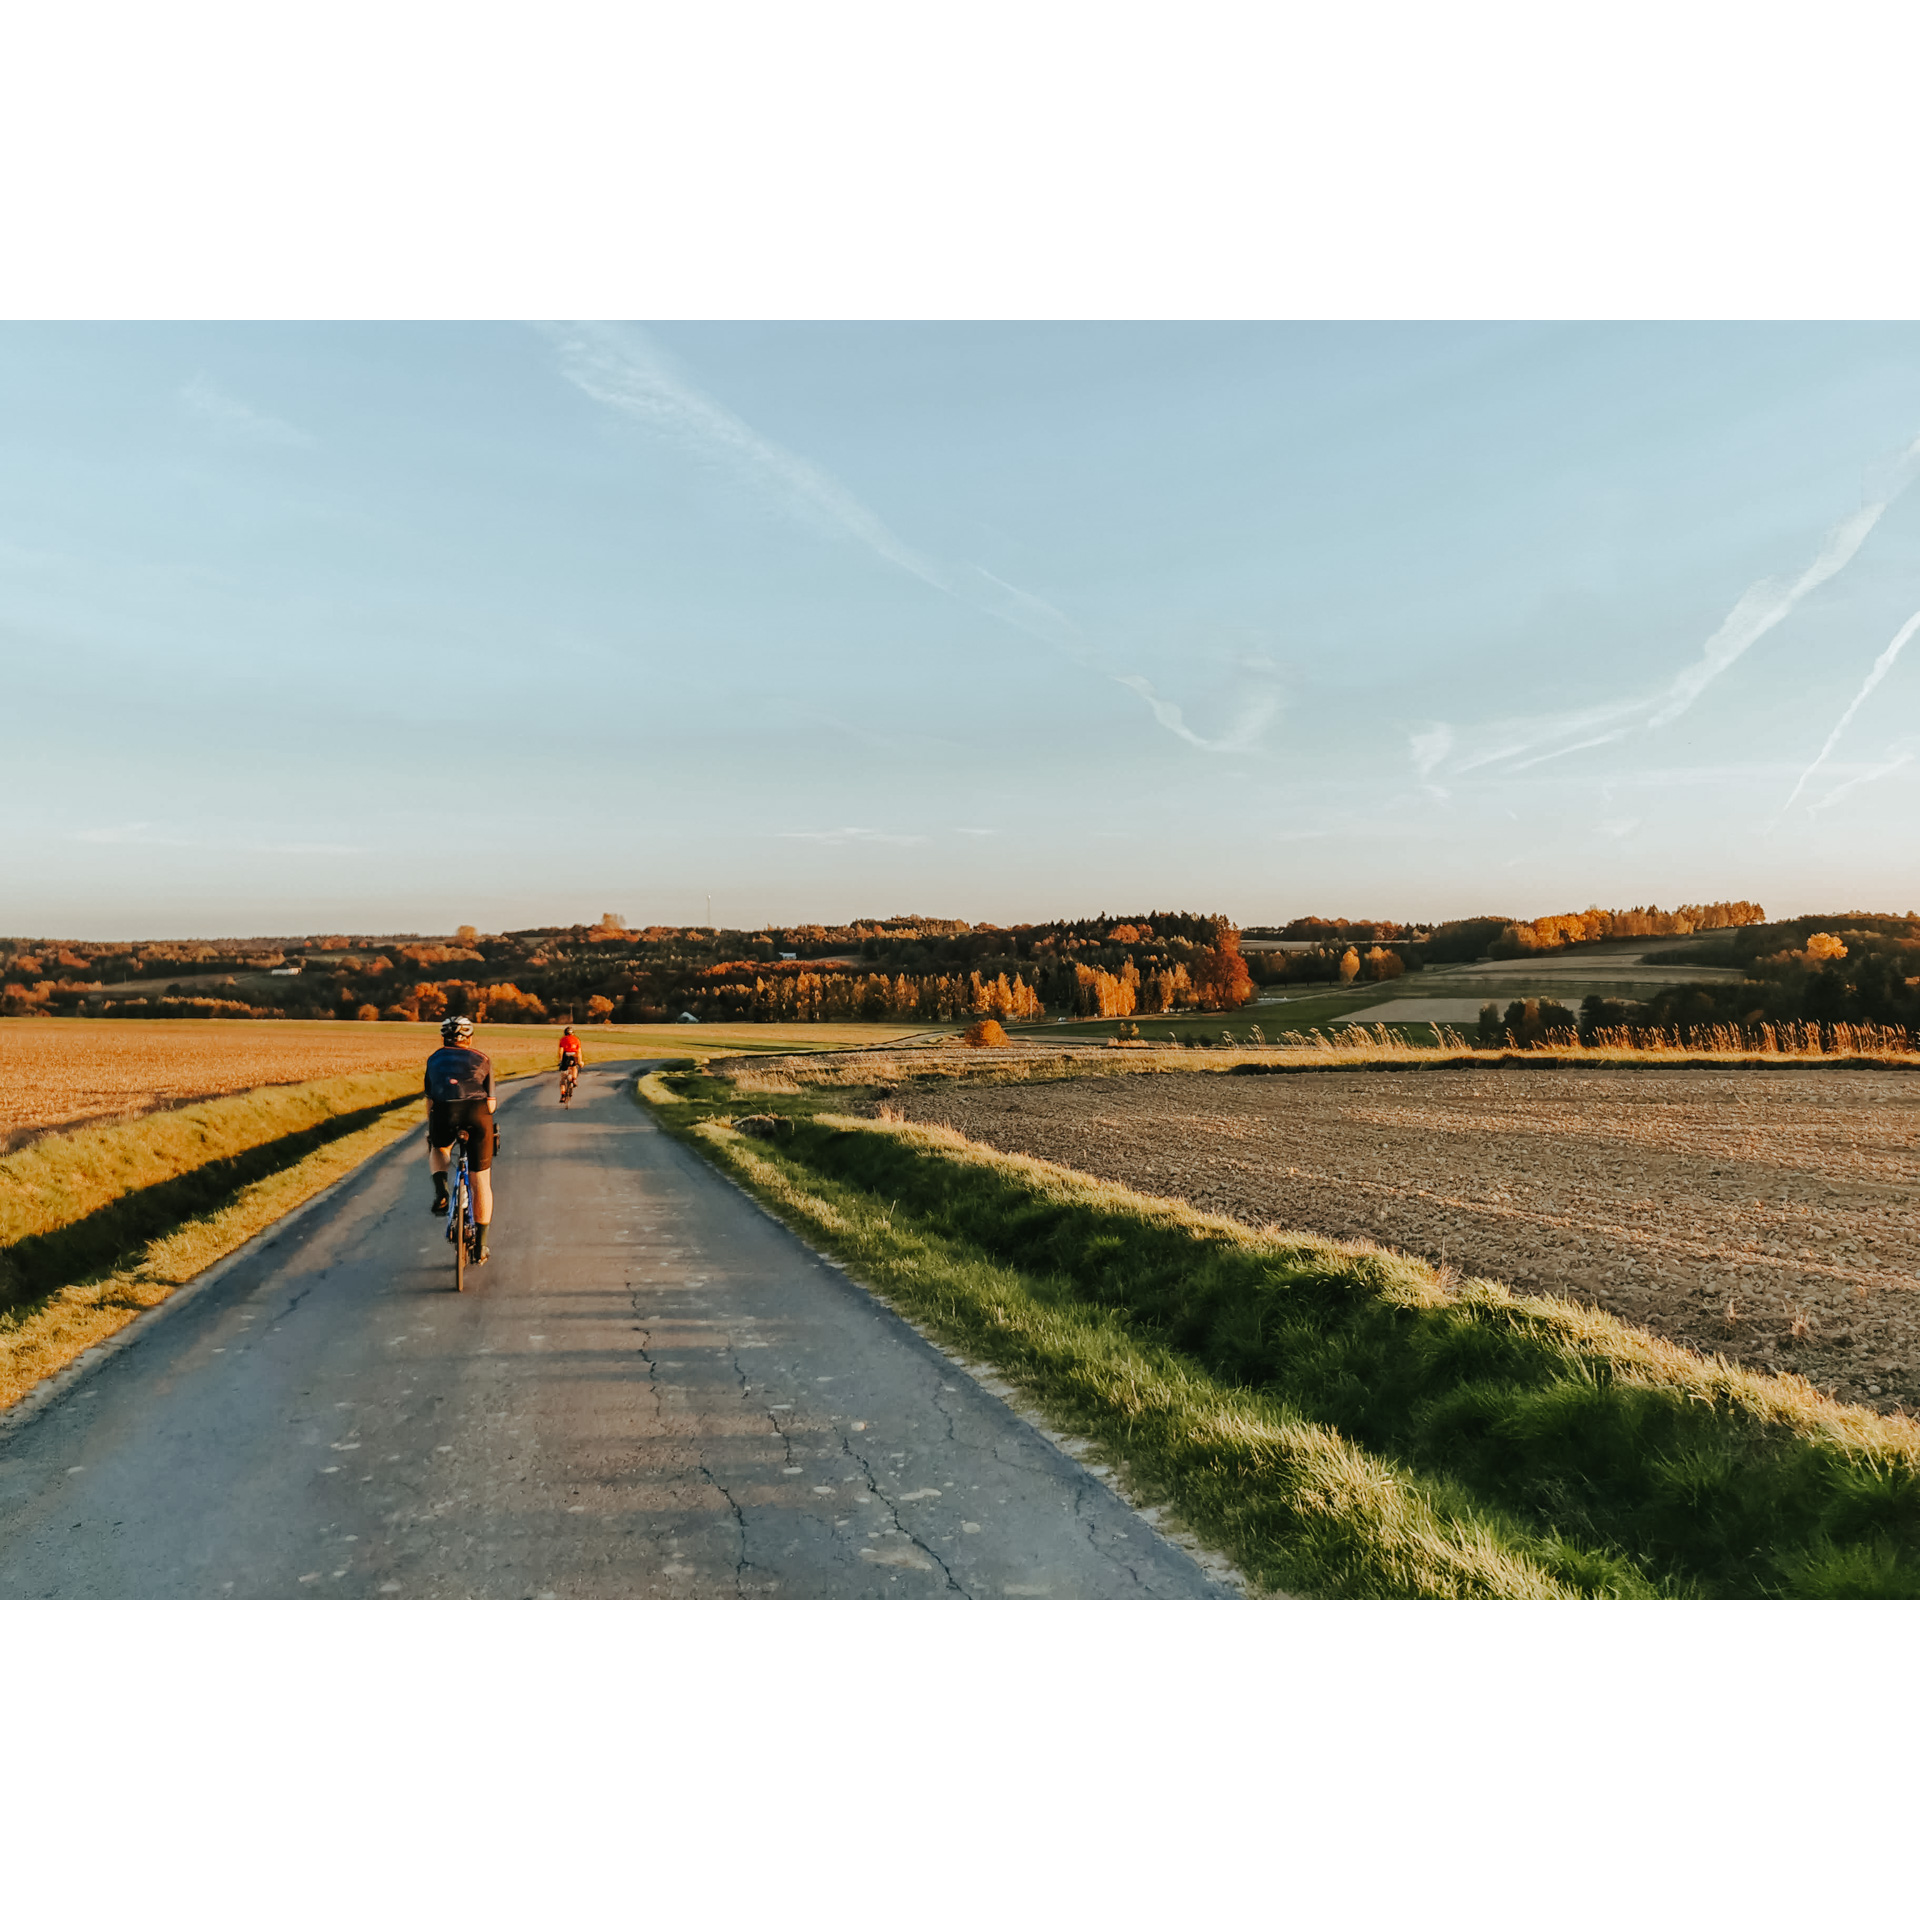 Dwóch rowerzystów jadących o zachodzie słońca asfaltową drogą biegnącą między polami uprawnymi, w oddali brązowo-rude korony drzew na pagórku i błękitne niebo